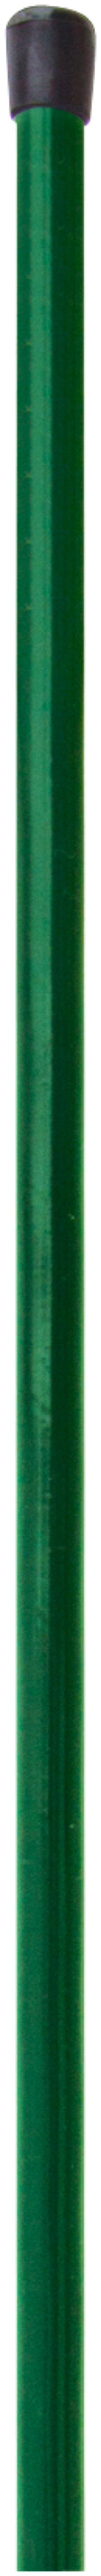 H+S Geflechtspannstab grün 1,0 m